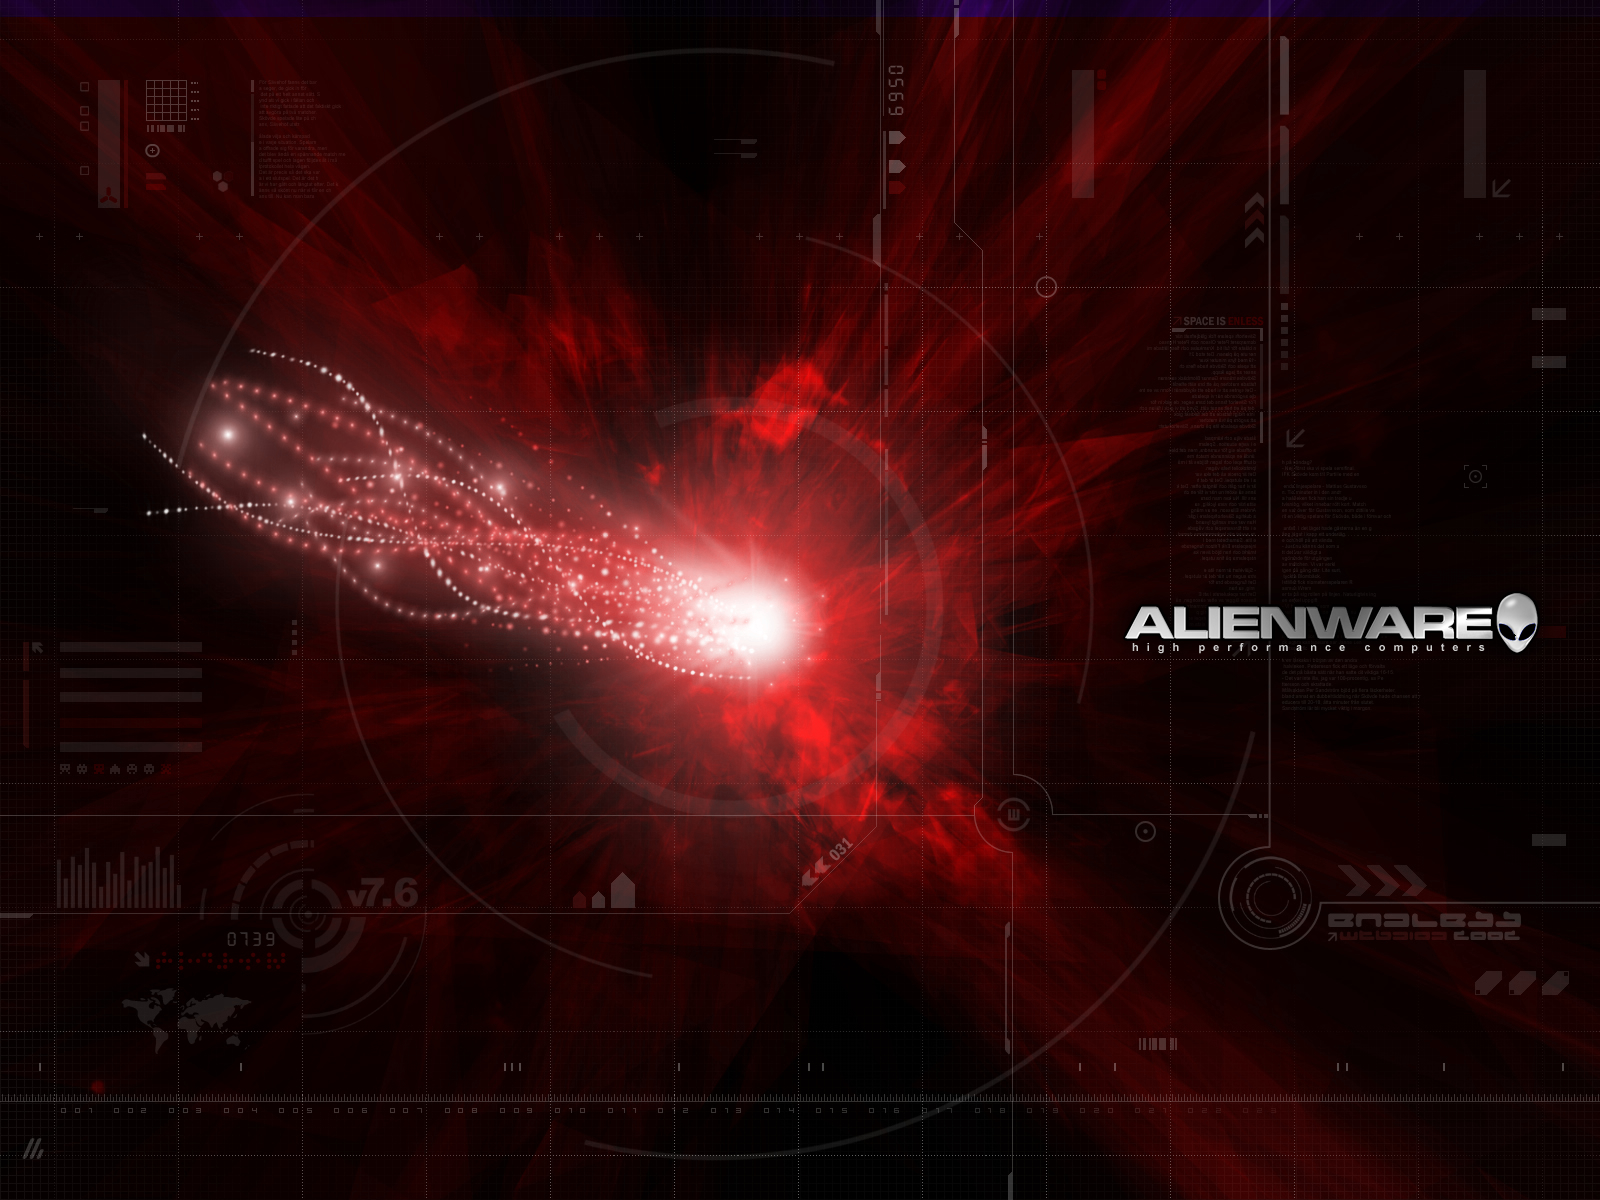 fond d'écran alienware rouge,rouge,texte,ciel,objet astronomique,ligne